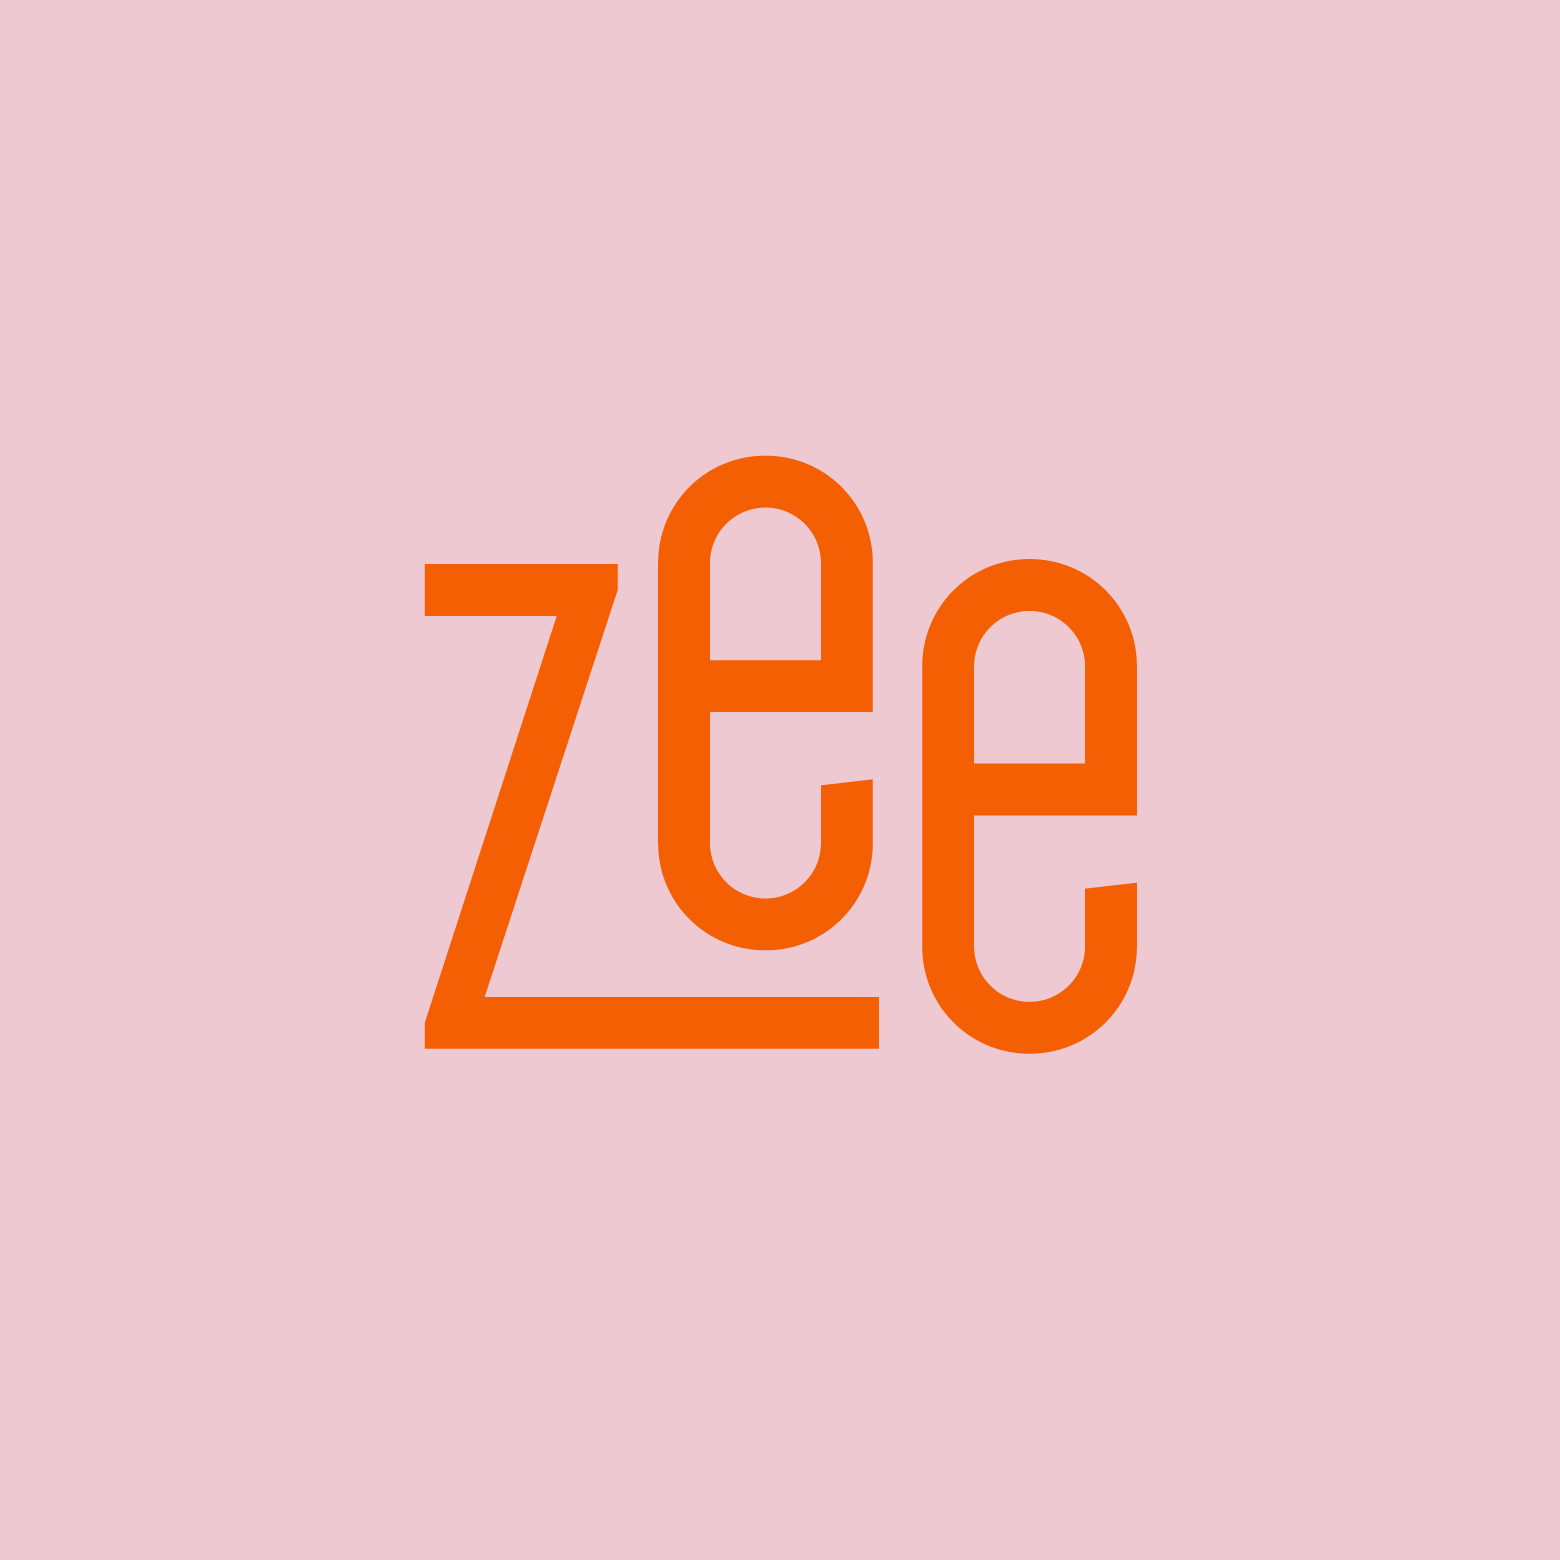 SBC_Zee_CaseStudy_Branding_01-1